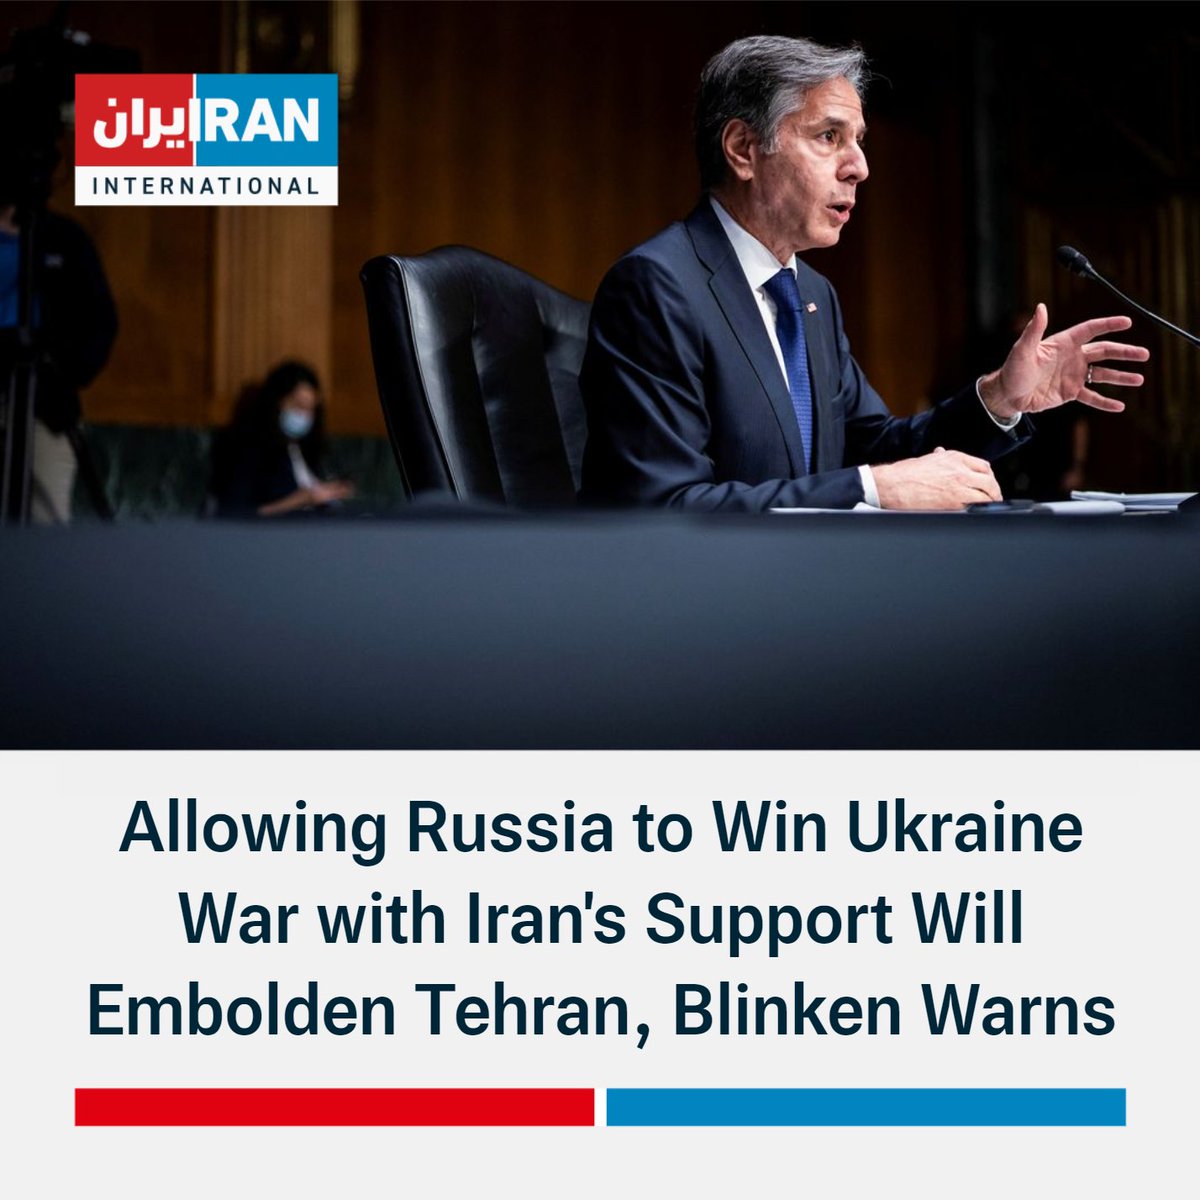 De Amerikaanse minister van Buitenlandse Zaken @SecBlinken tijdens hoorzitting in de Senaat: Sinds we de traditionele middelen van Rusland om zijn leger te bevoorraden hebben afgesneden, heeft het land zich steeds meer tot Iran gewend voor hulp. In ruil daarvoor heeft Moskou Iran voorzien van steeds geavanceerdere militaire technologie